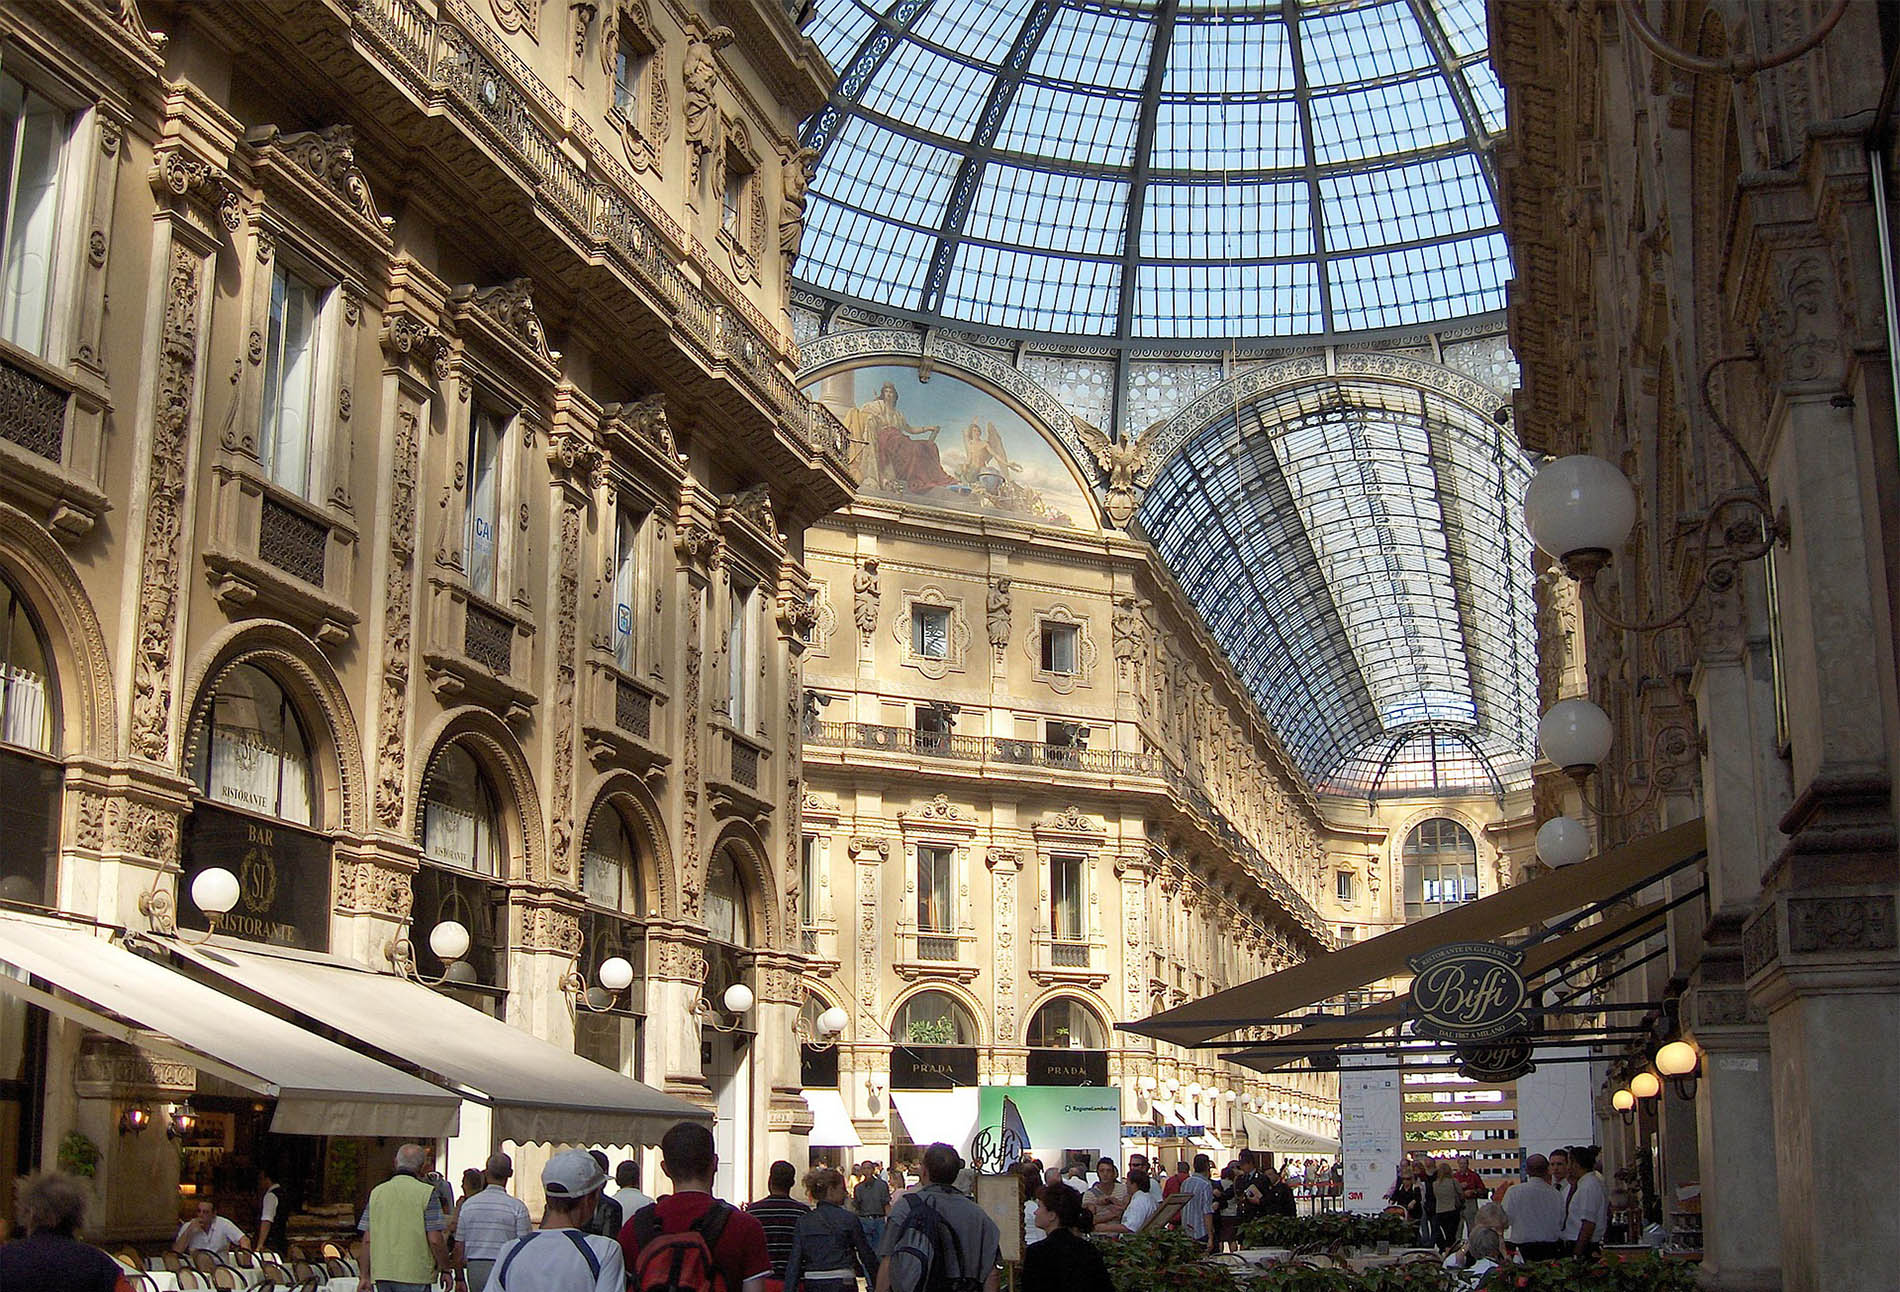 Visiter Milan en 1 journée c'est possible ! Découvrez le Duomo, la Scala